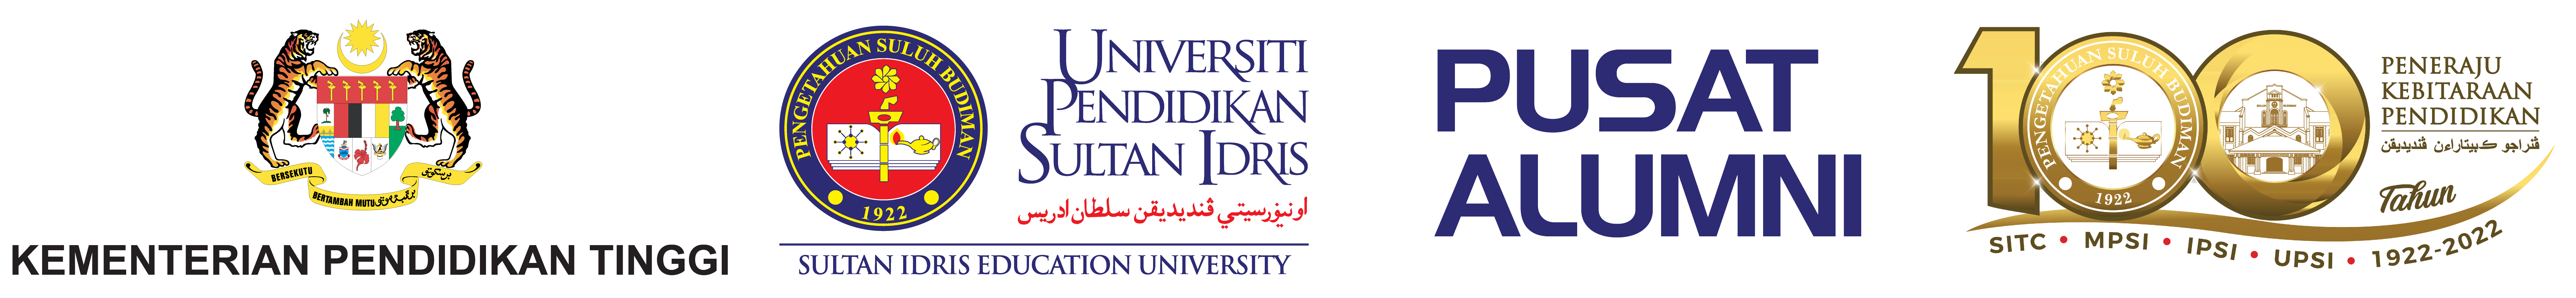 UPSI | Pusat Alumni